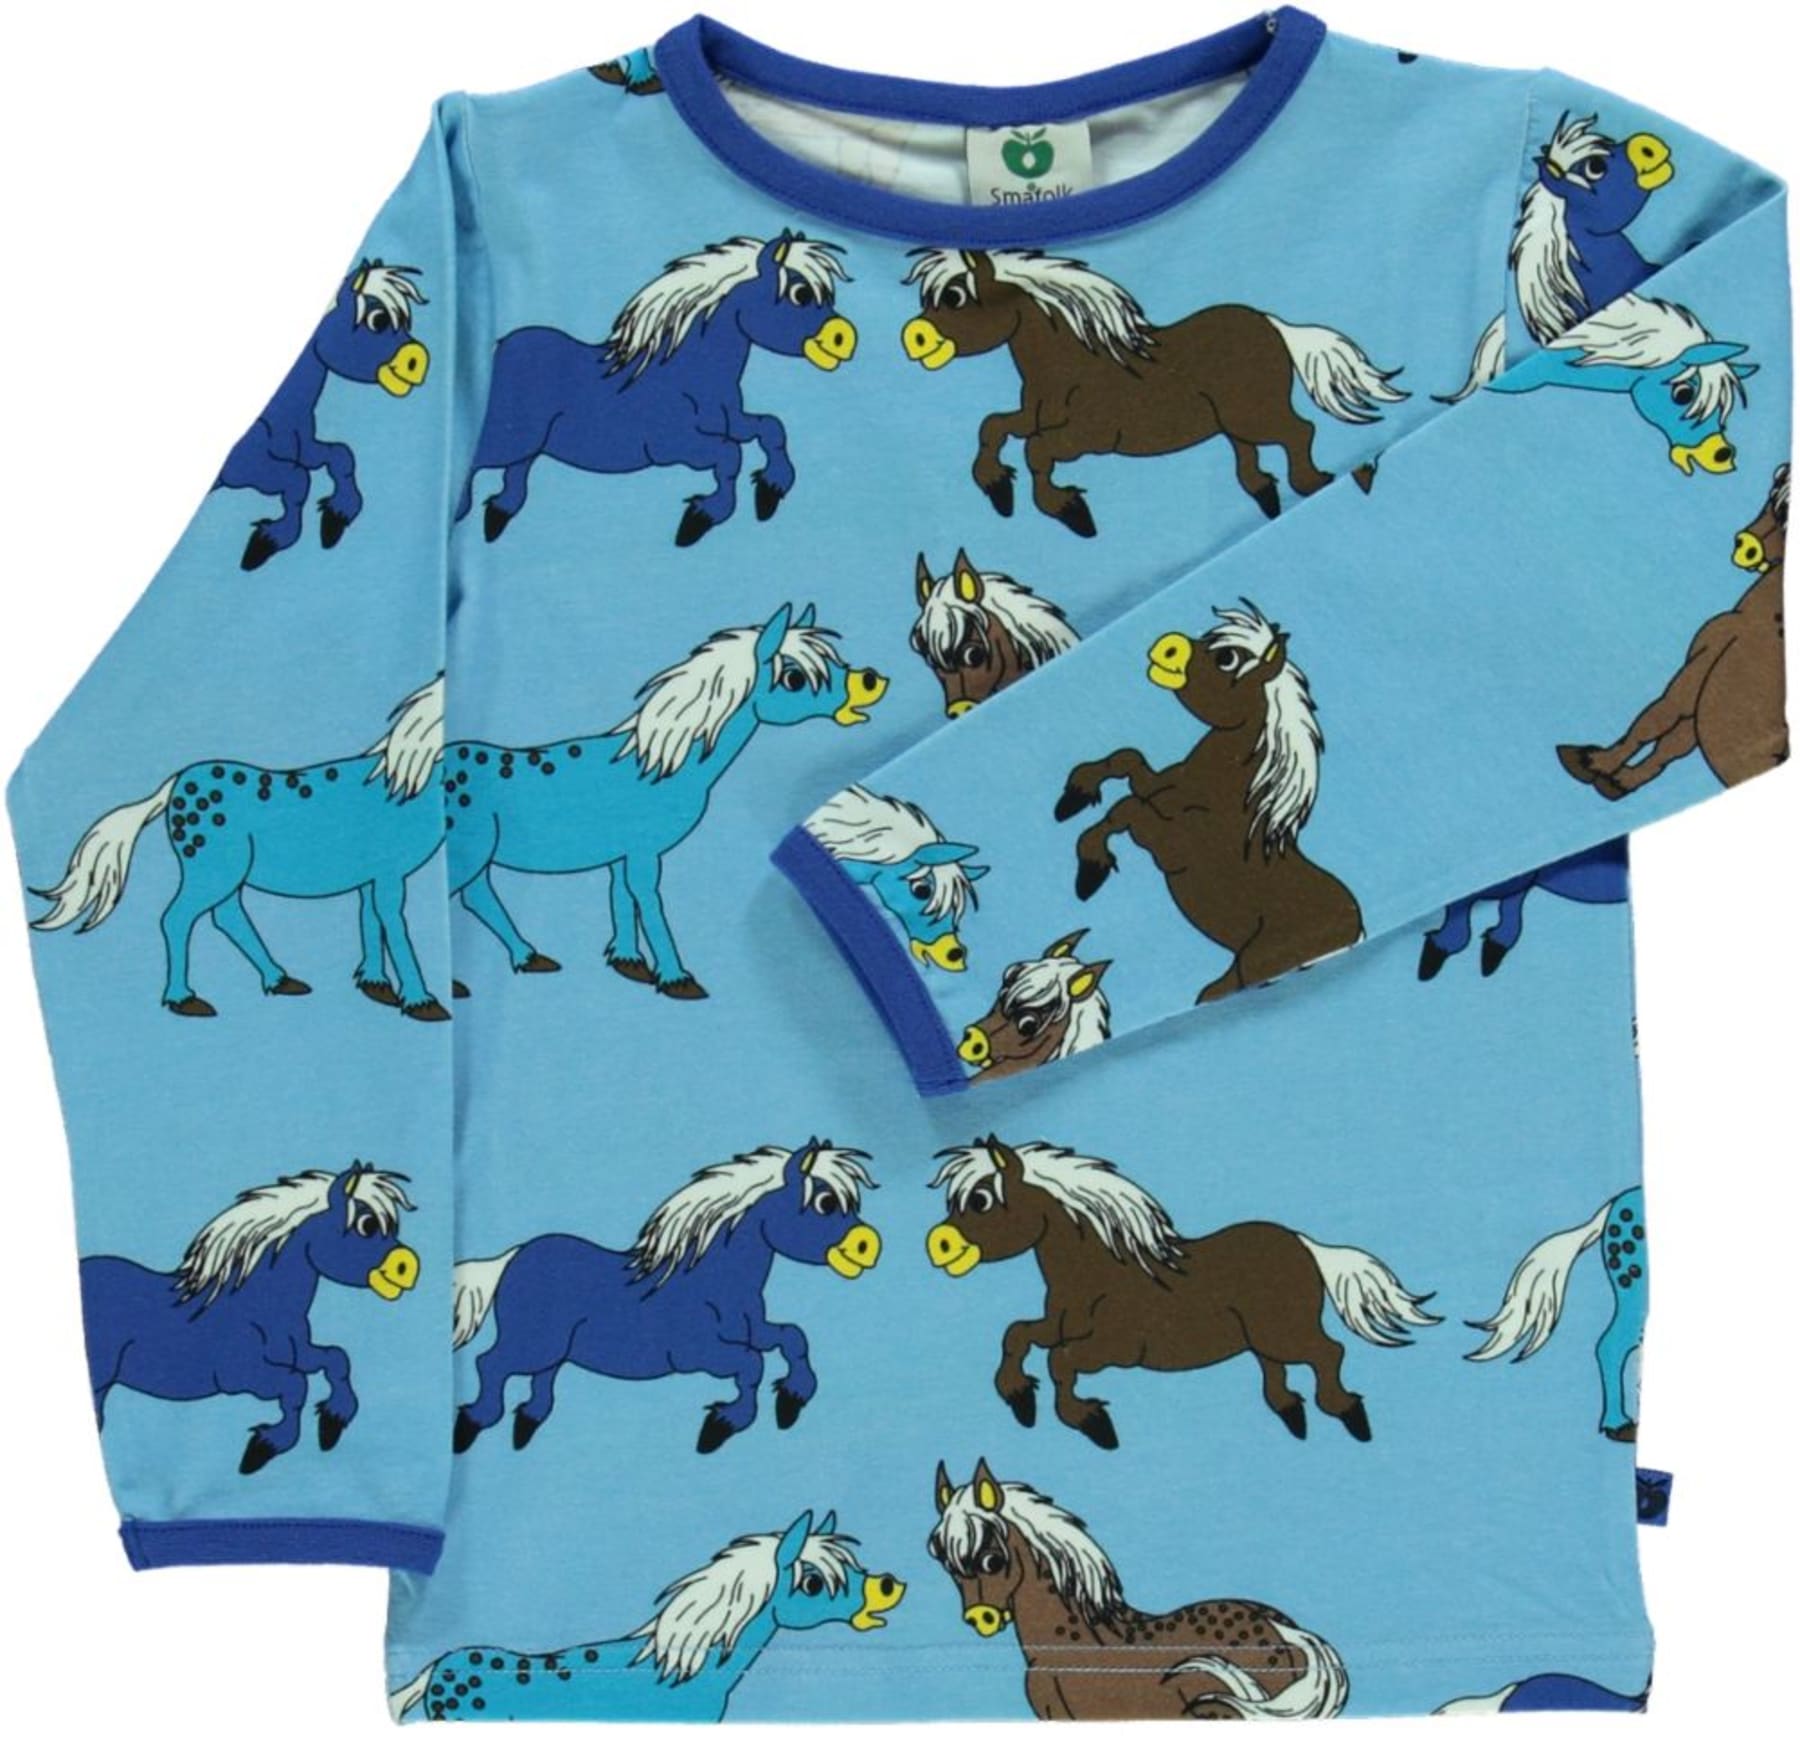 Smafollk - Longsleeve Horses Blue Grotto - Shirt Paarden Blauw